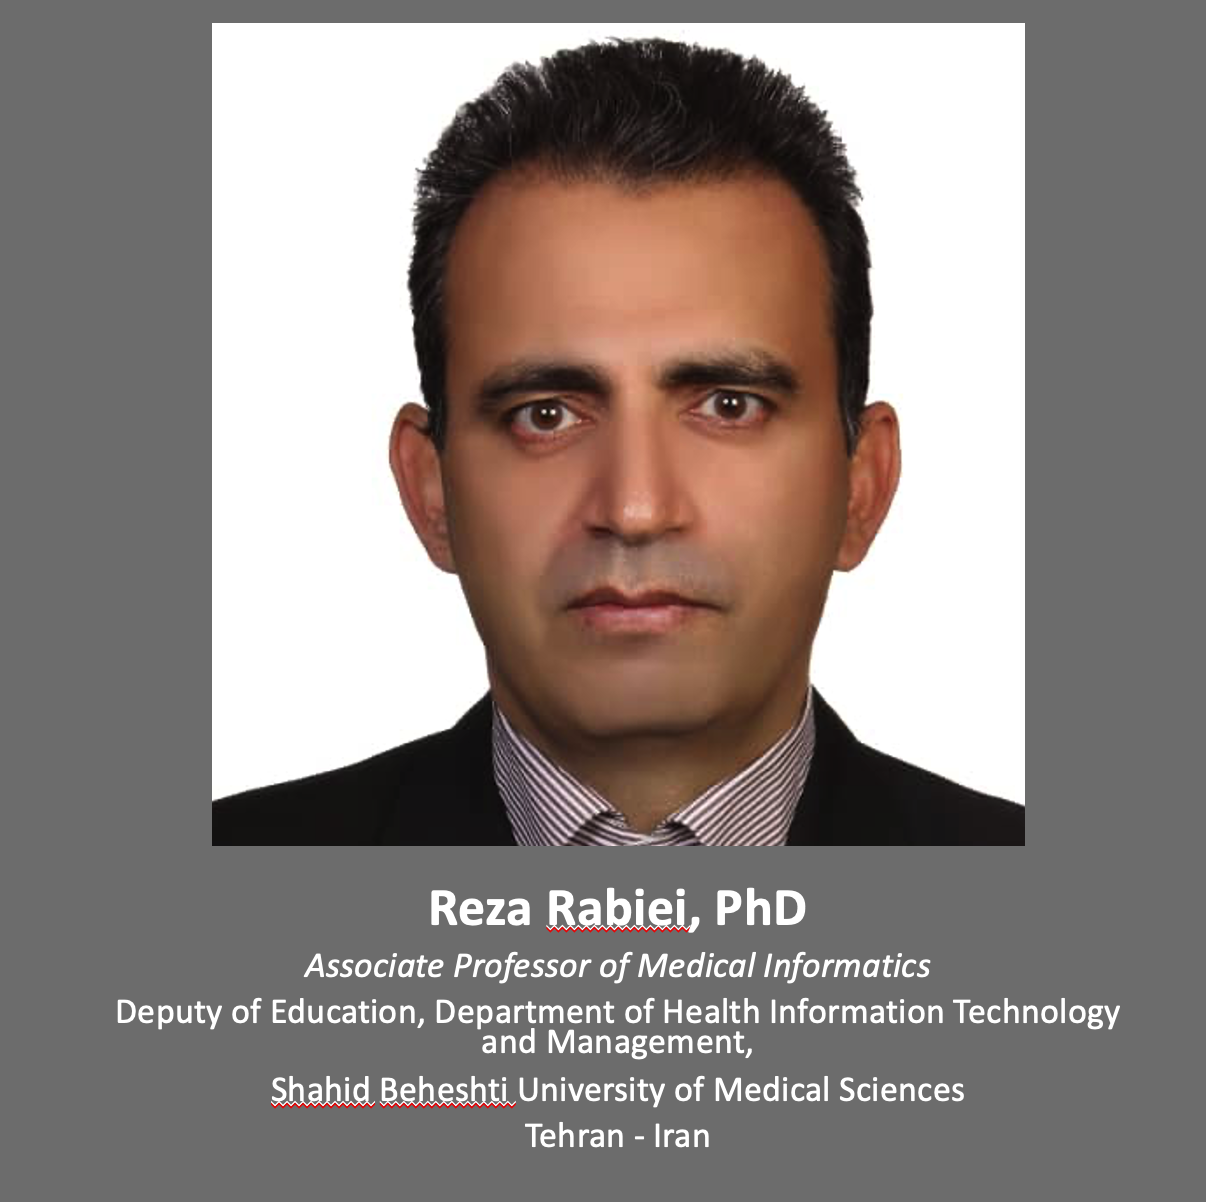 Reza Rabiei